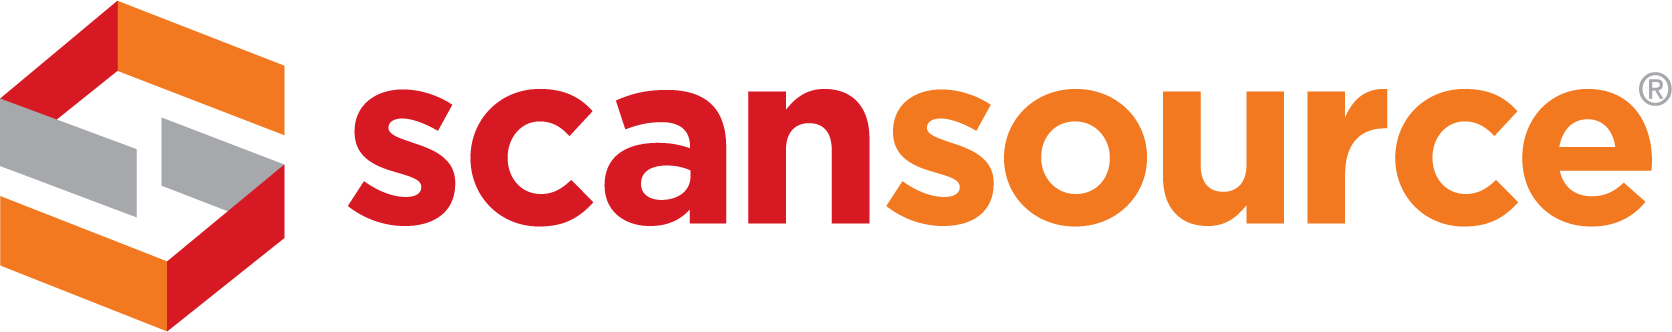 Scansource logo